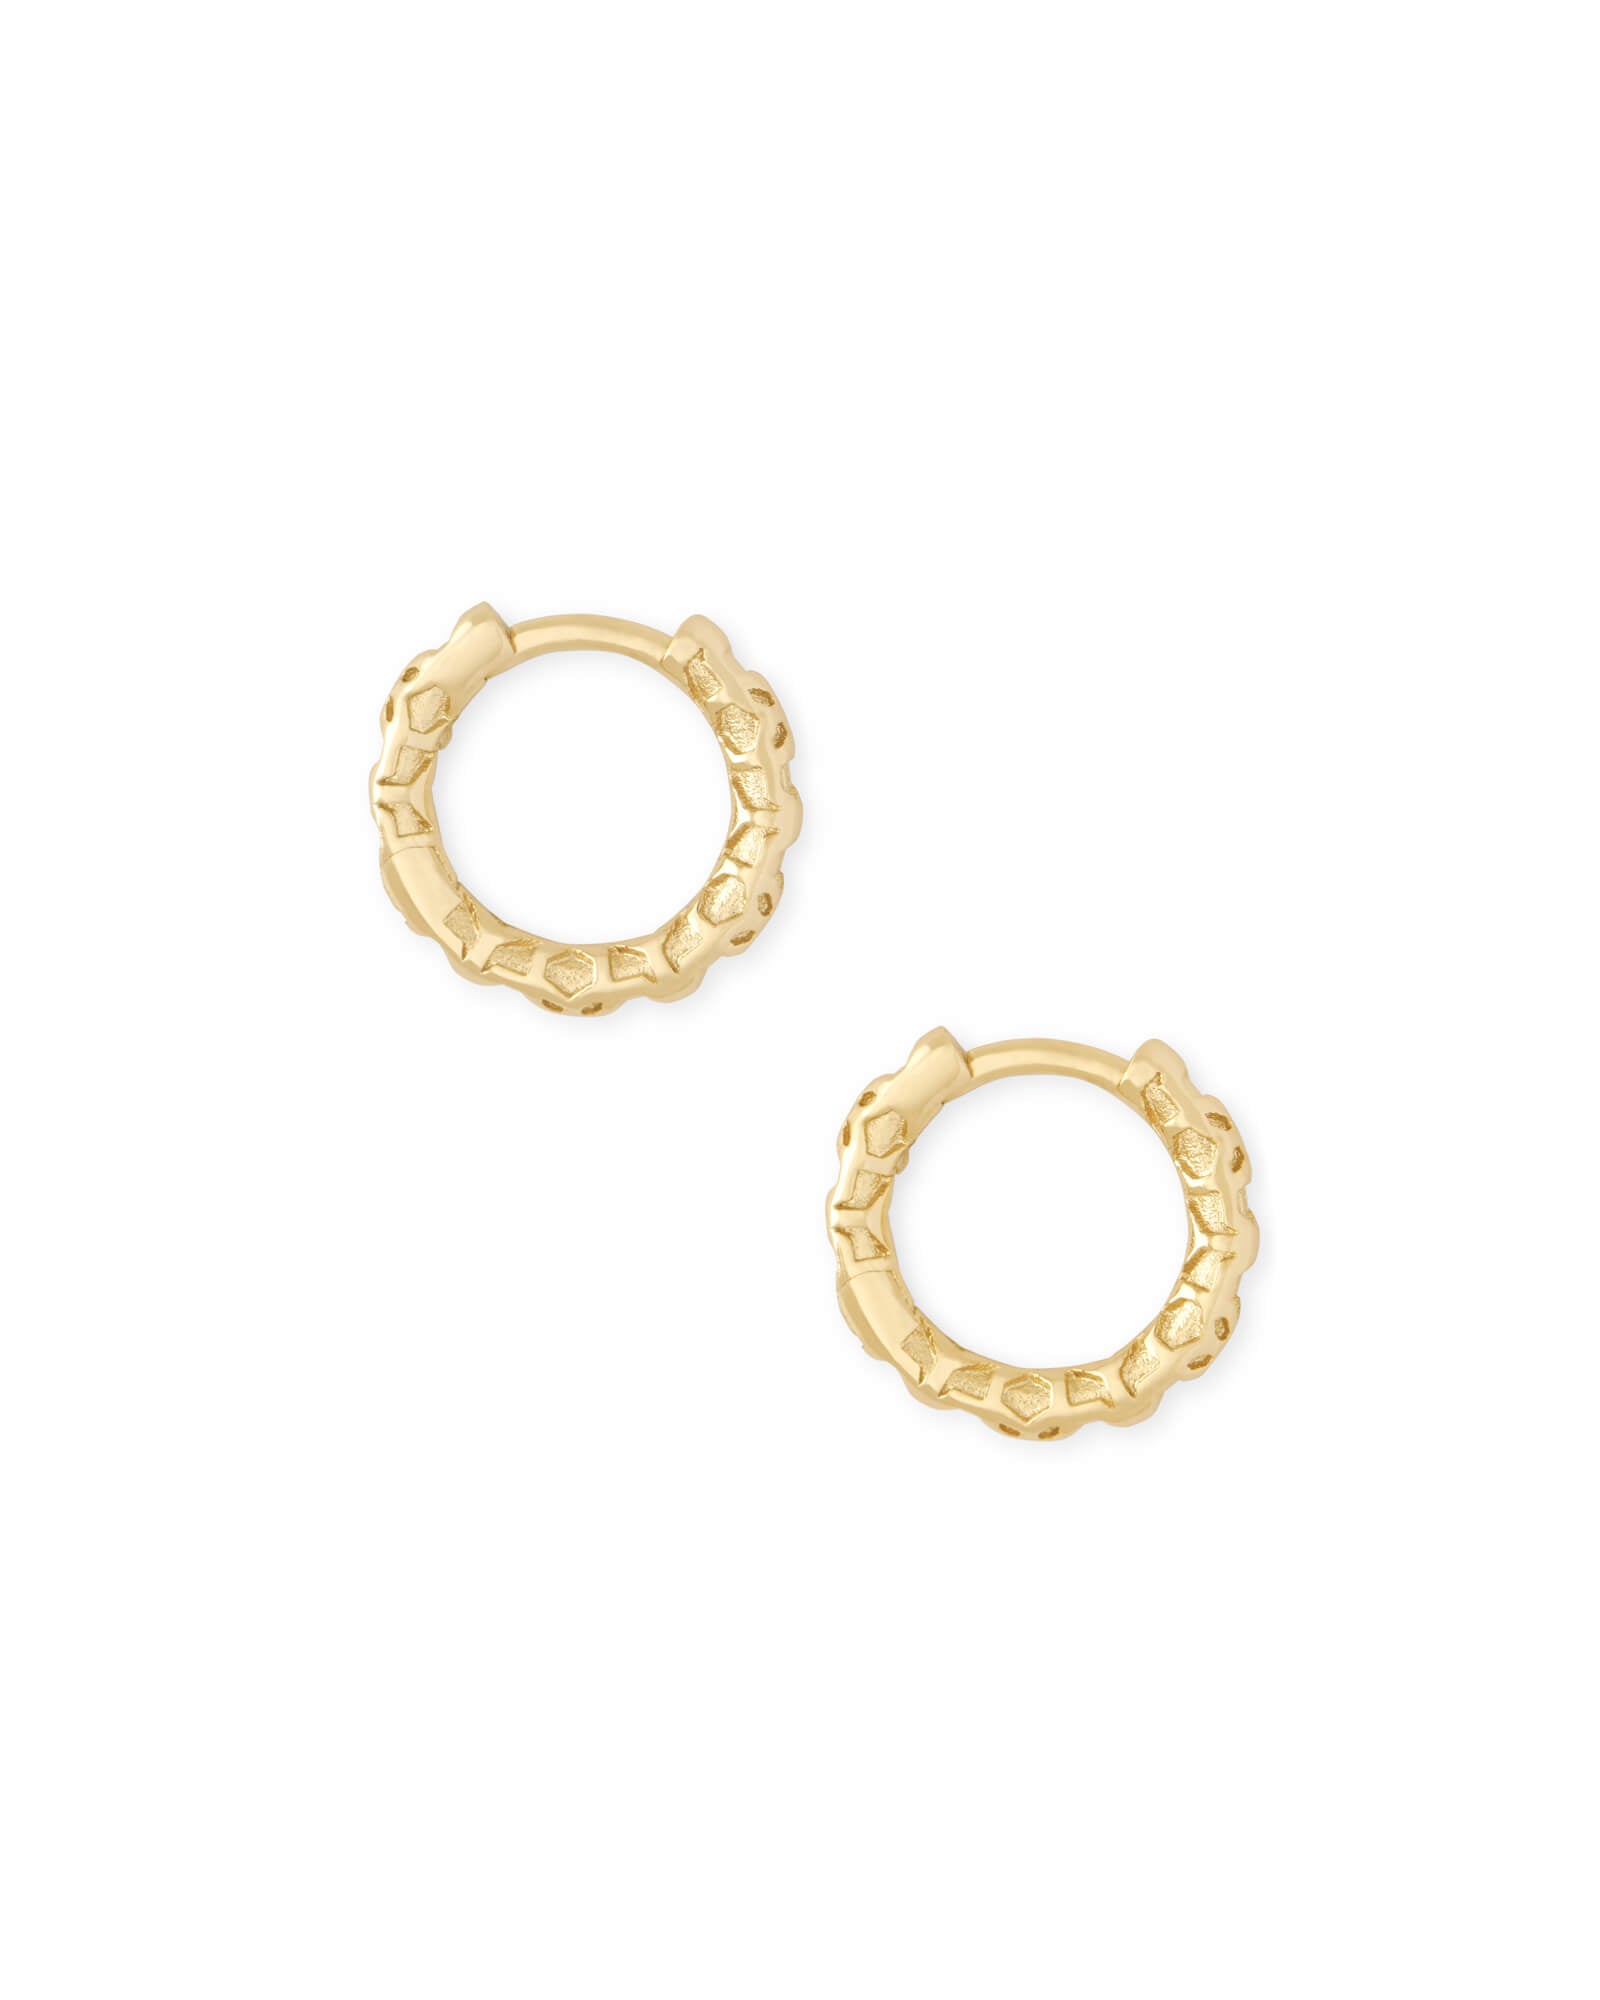 Kendra Scott Maggie Filigree Huggie Hoop Earrings in Gold Plated